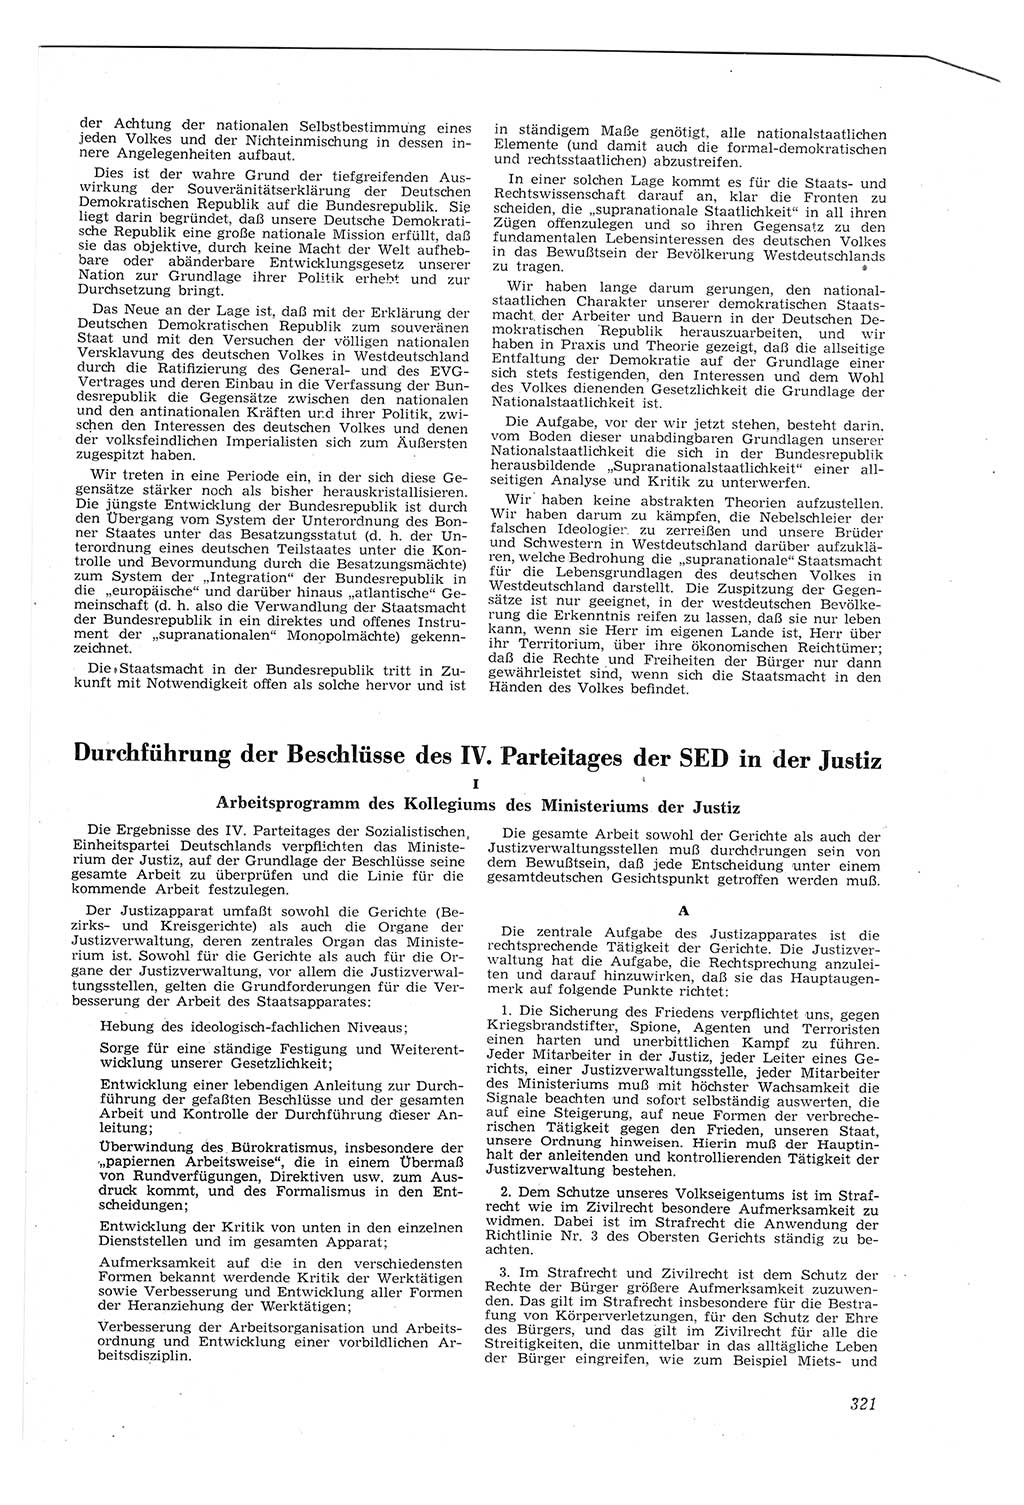 Neue Justiz (NJ), Zeitschrift für Recht und Rechtswissenschaft [Deutsche Demokratische Republik (DDR)], 8. Jahrgang 1954, Seite 321 (NJ DDR 1954, S. 321)